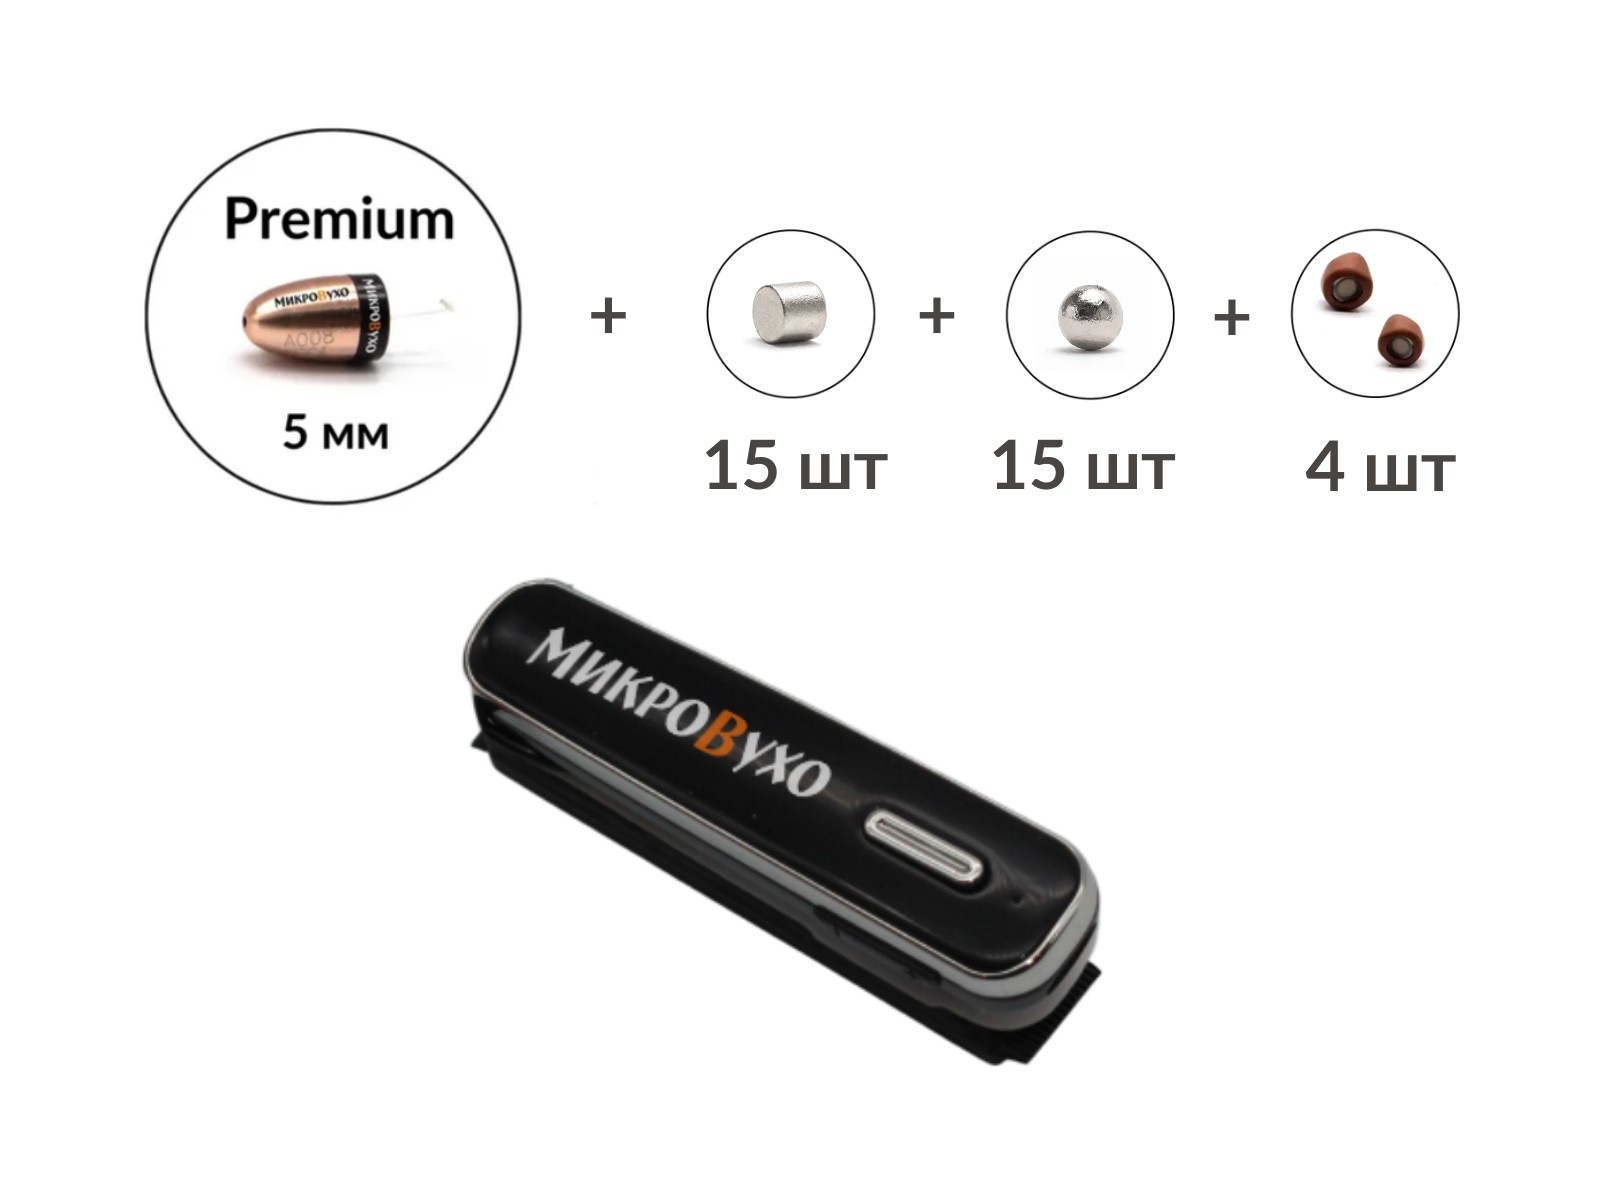 Универсальная гарнитура Bluetooth Box Premier Lite Plus  с капсулой Premium и магнитами 2 мм - изображение 15